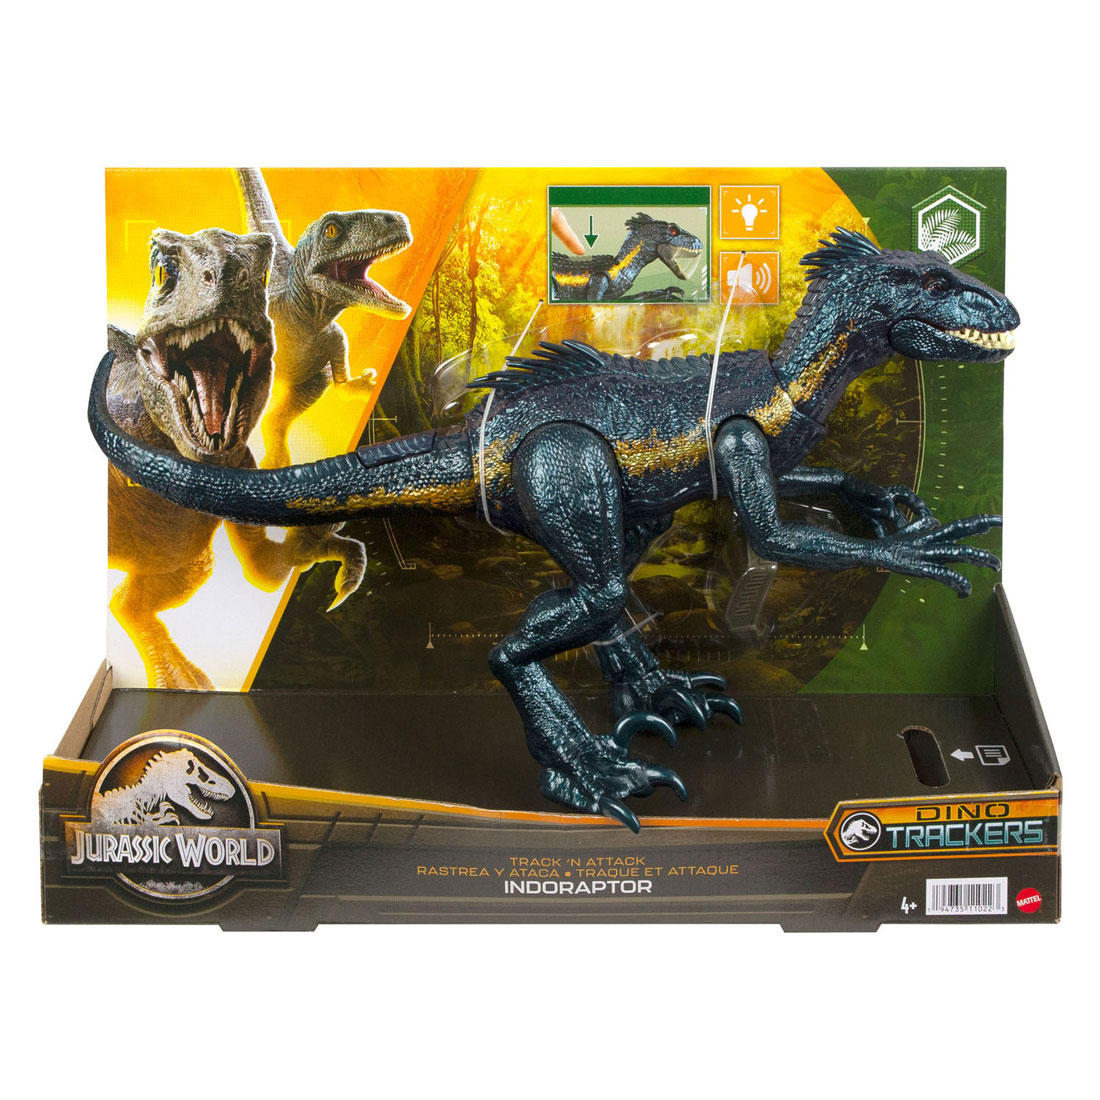 Jurassic World Track N Attack Indorraptor Dino Speelfiguur